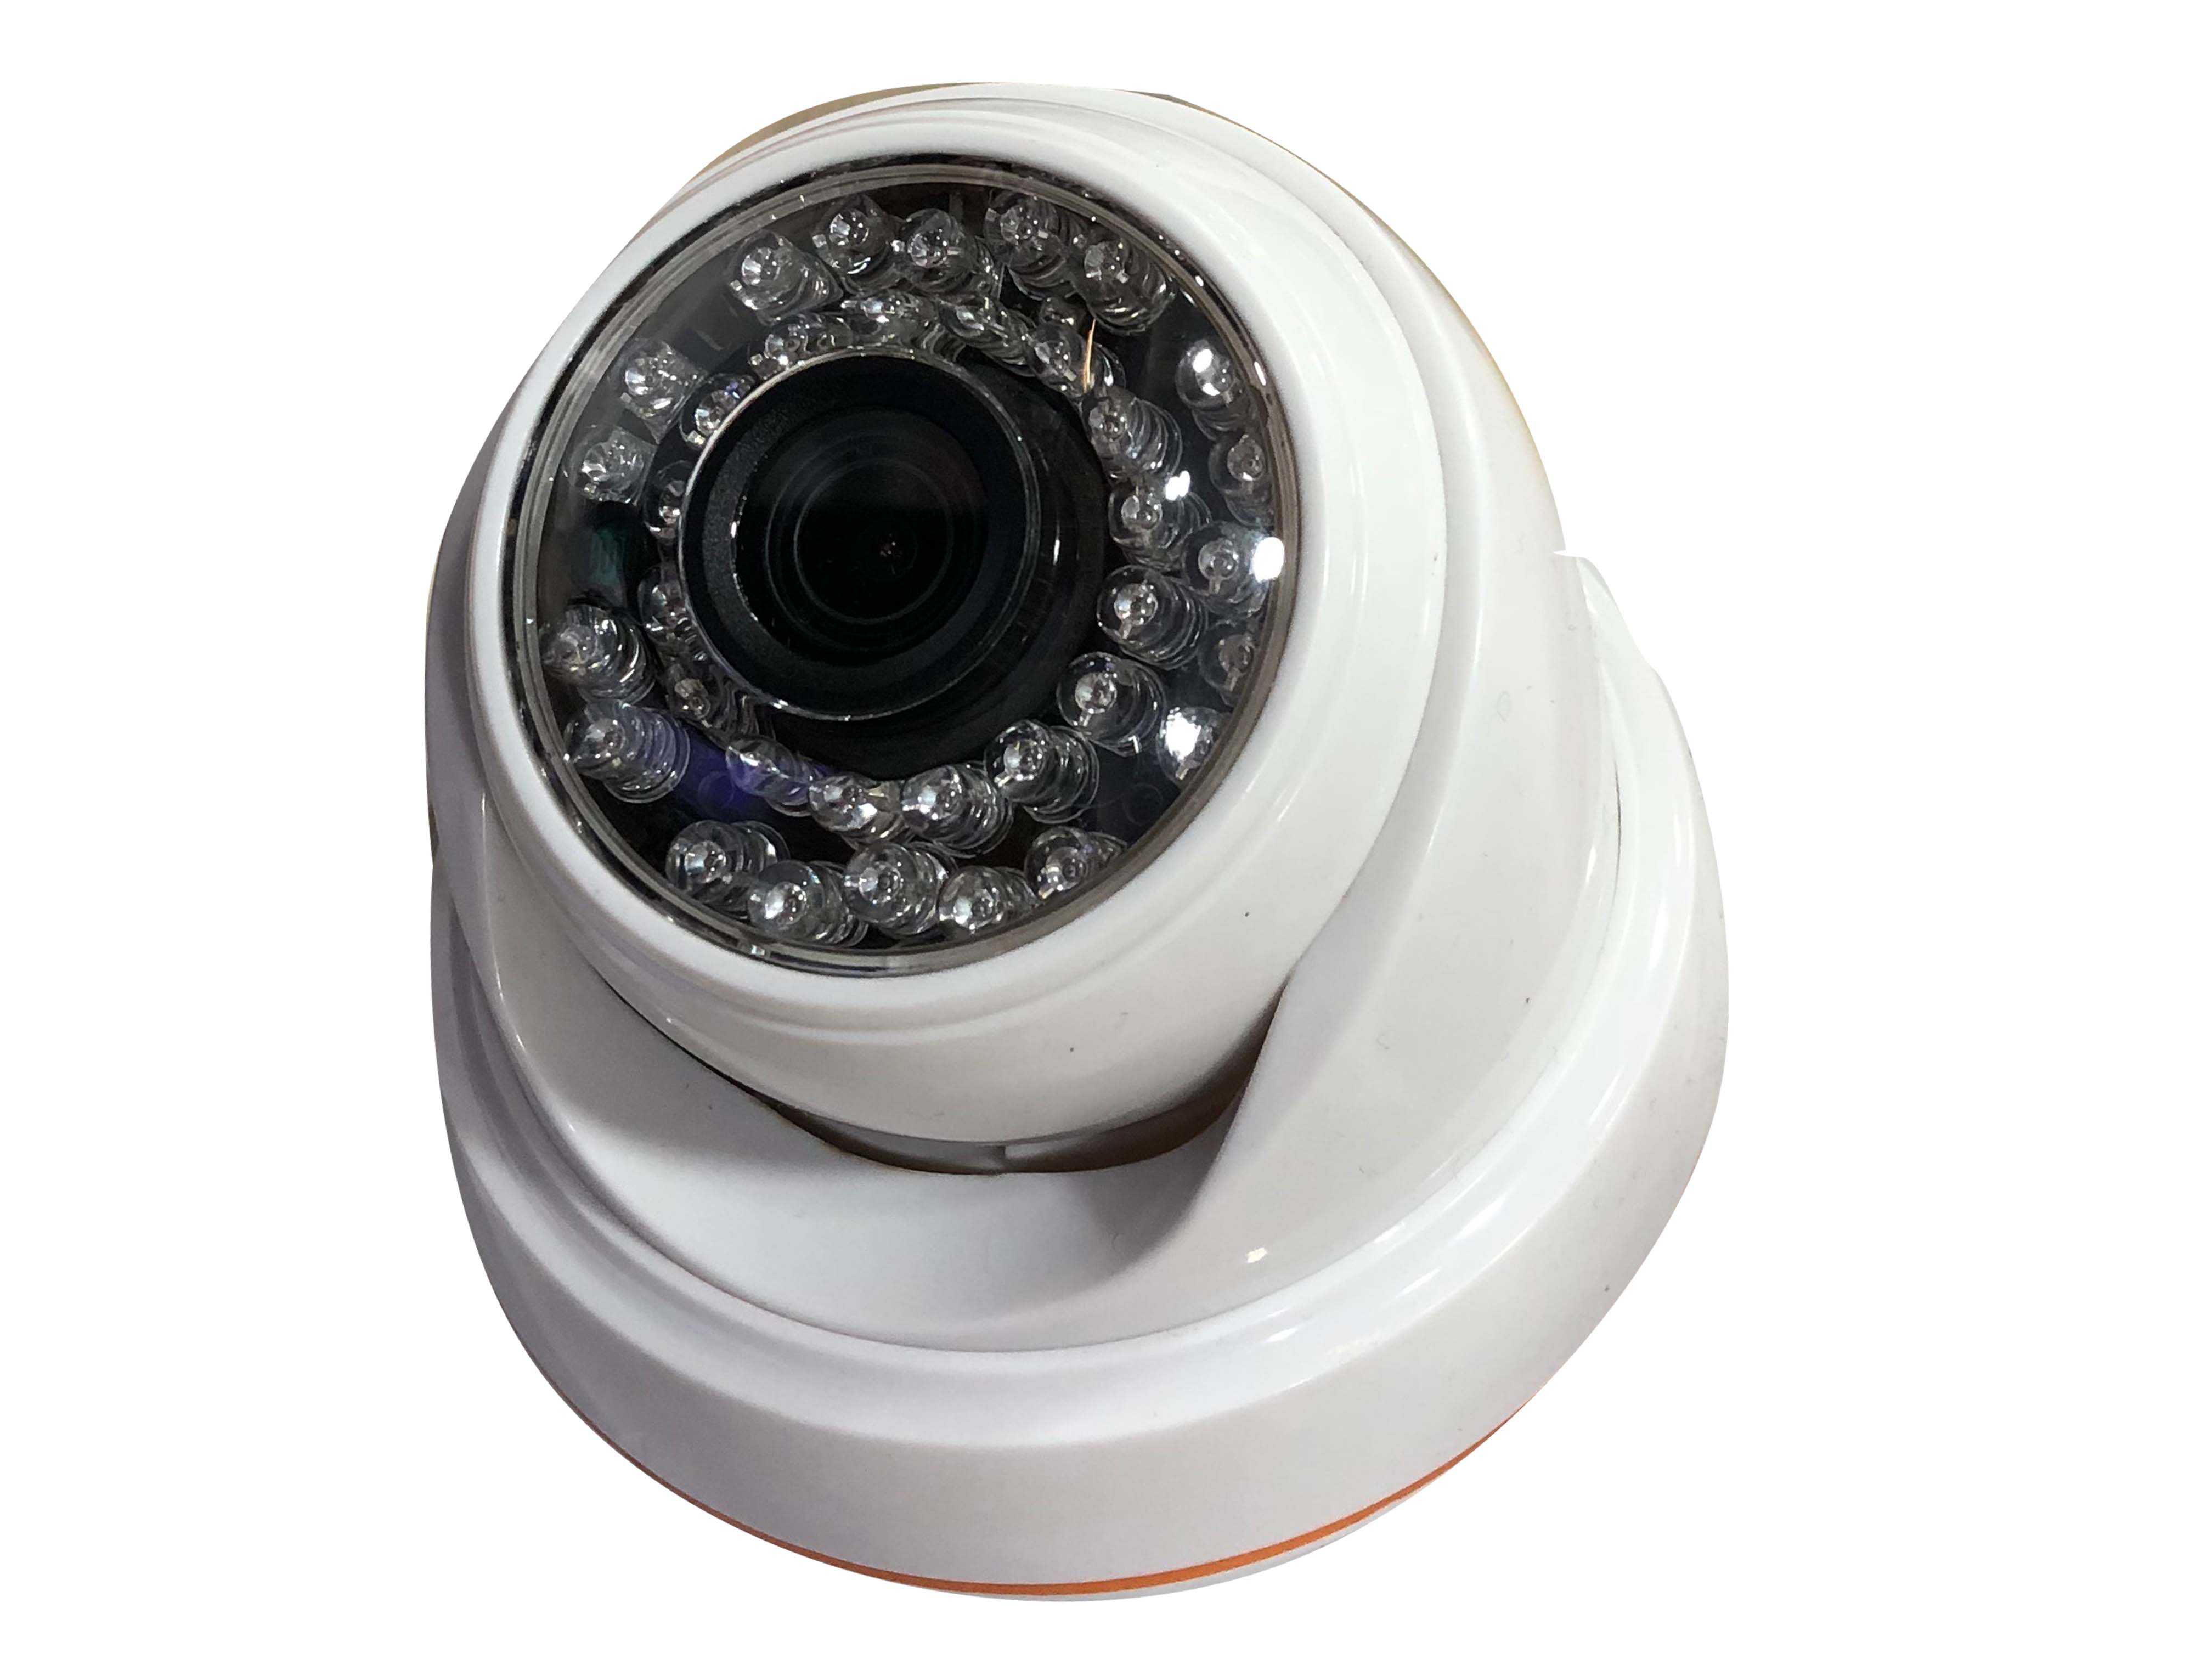 Автономные камеры видеонаблюдения с записью - как выбрать? | портал о системах видеонаблюдения и безопасности